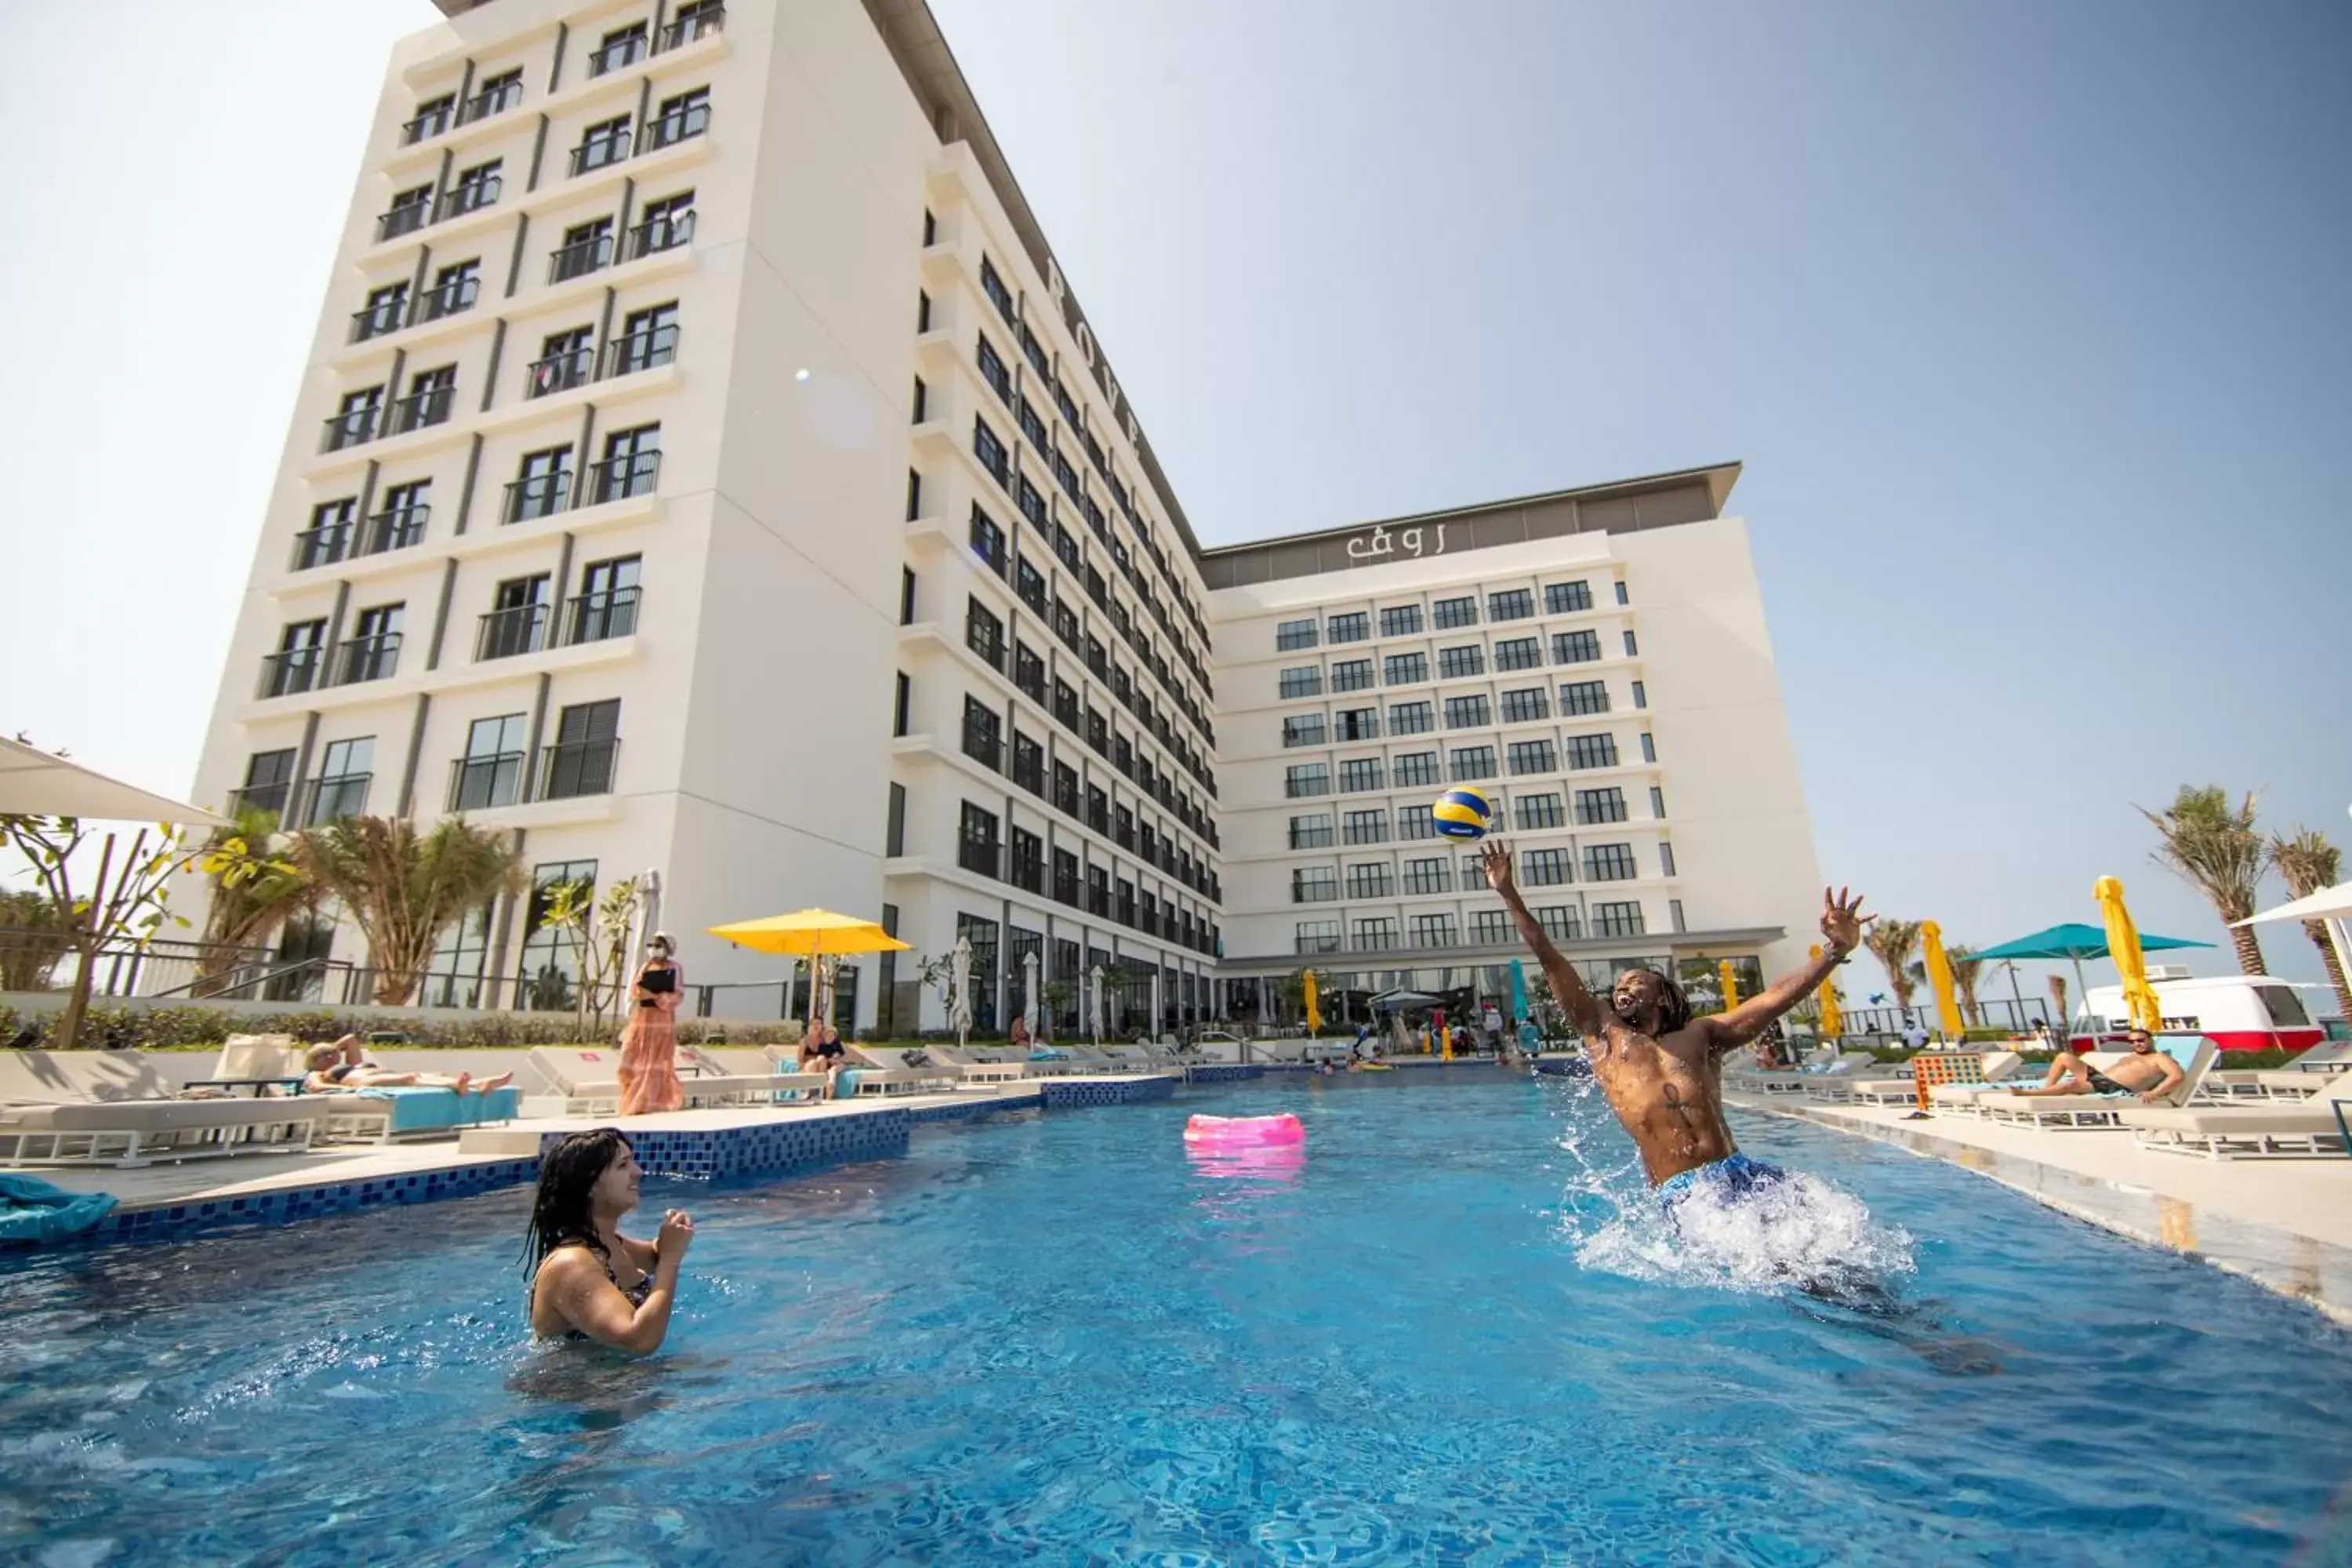 Swimming pool in Rove La Mer Beach, Jumeirah